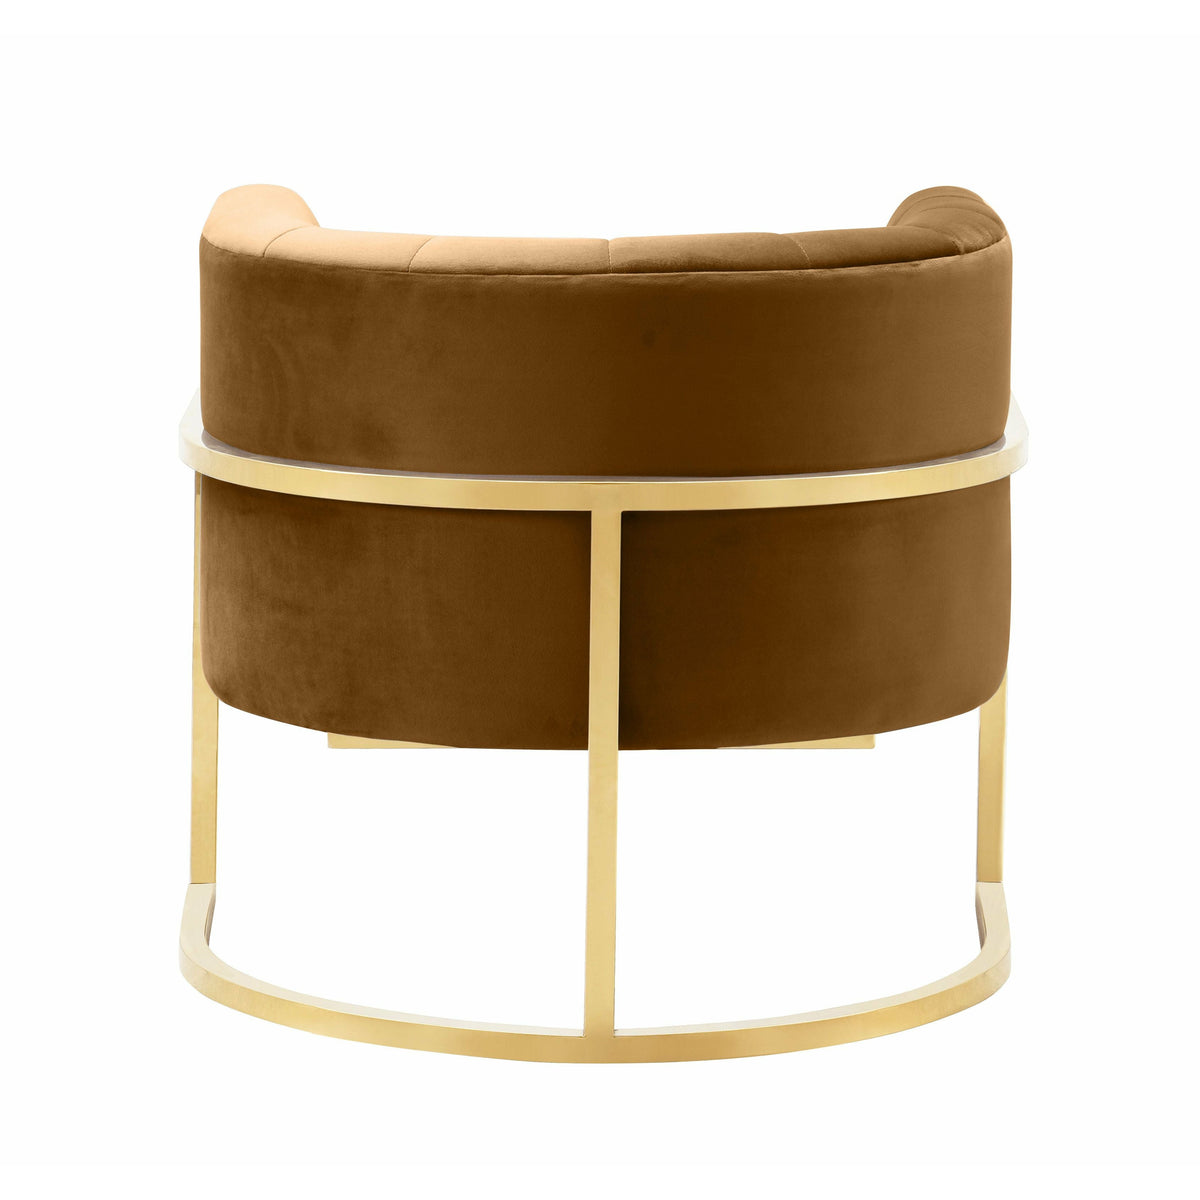 Mangolia Cognac Velvet Chair - Be Bold Furniture